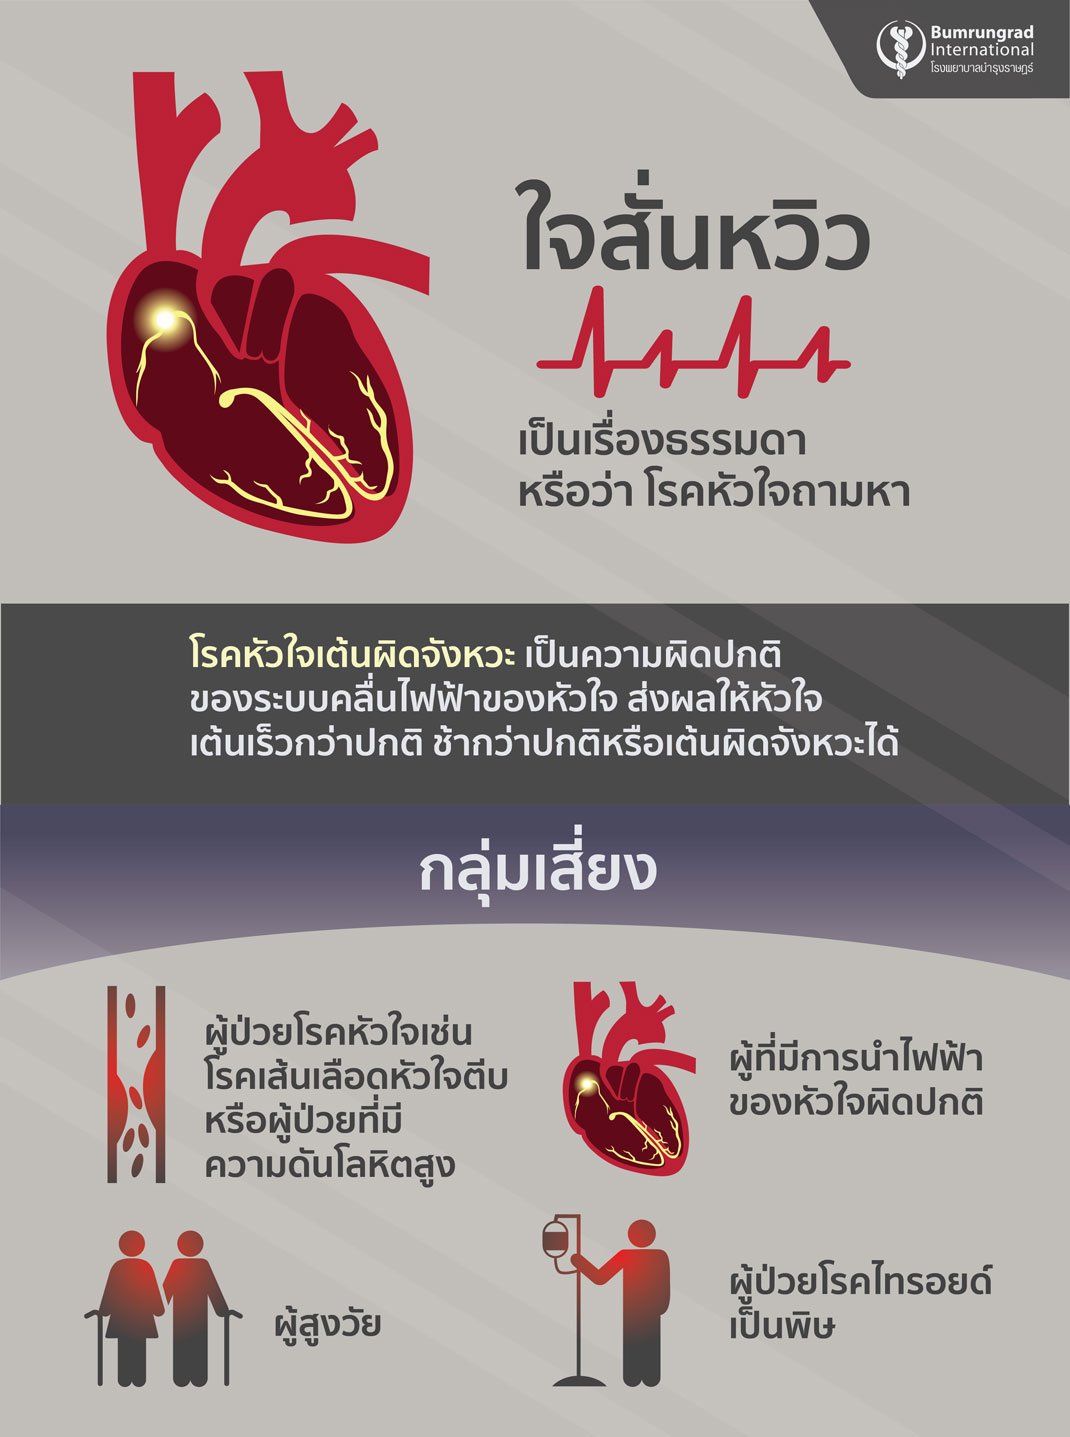 ใจสั่นหวิว เรื่องธรรมดาหรือว่าโรคหัวใจถามหา Infographic คือ